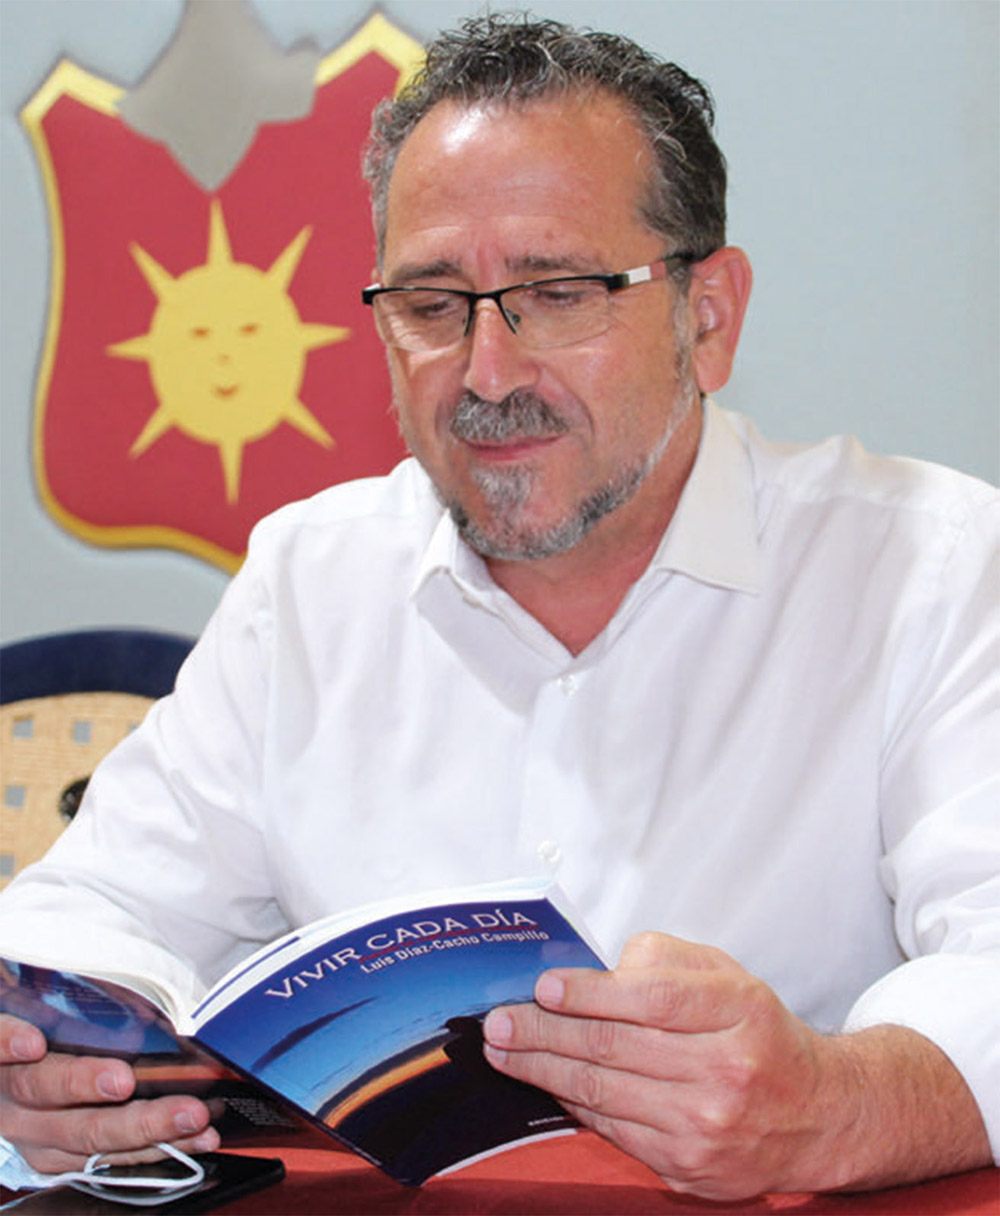 El poeta solanero Luis Díaz-Cacho Campillo leyendo su libro Vivir cada día en un acto en La Solana